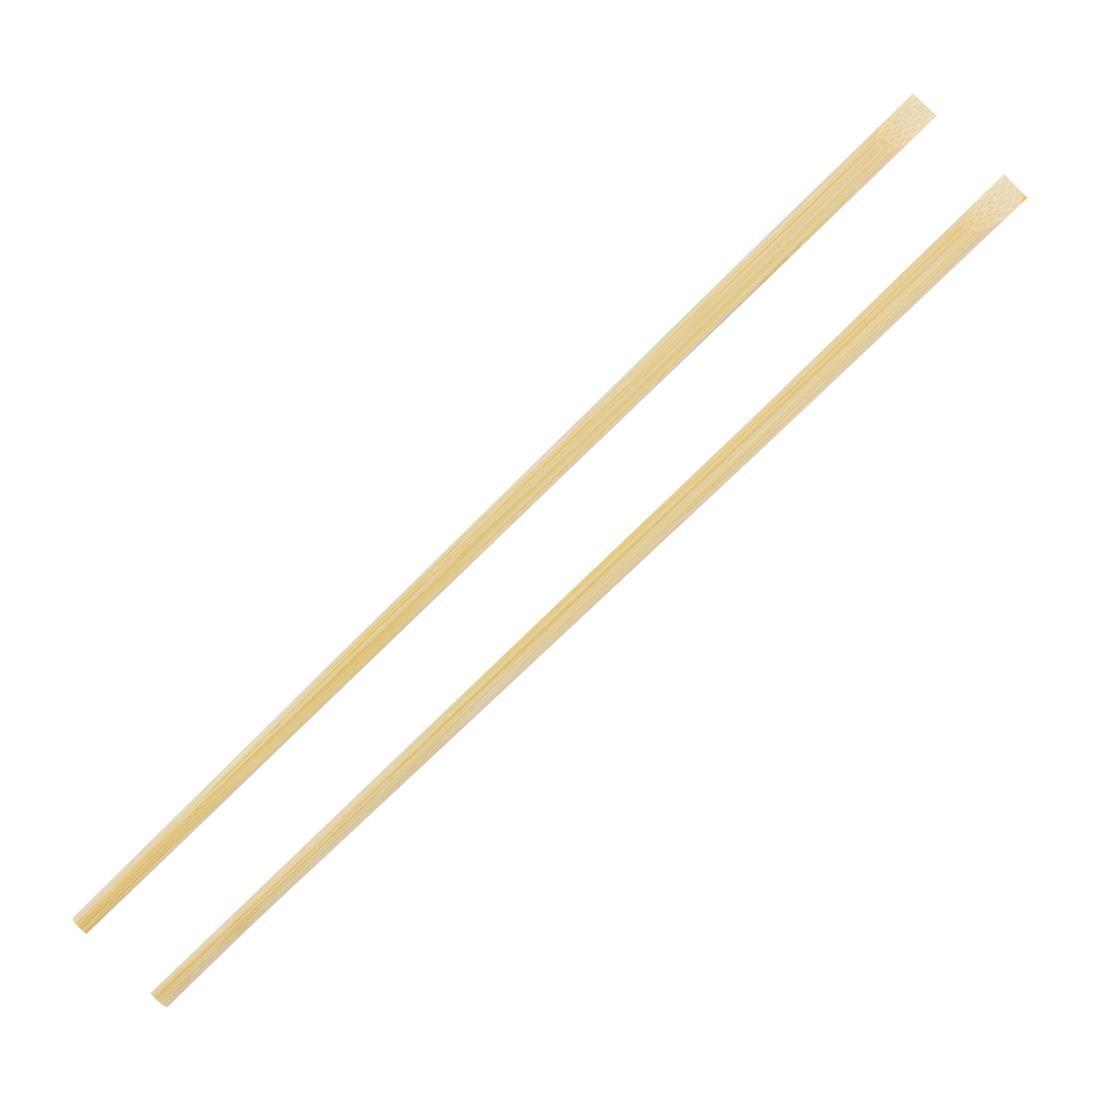 Fiesta Compostable Bamboo Chopsticks (Pack of 100) - DK393  - 2